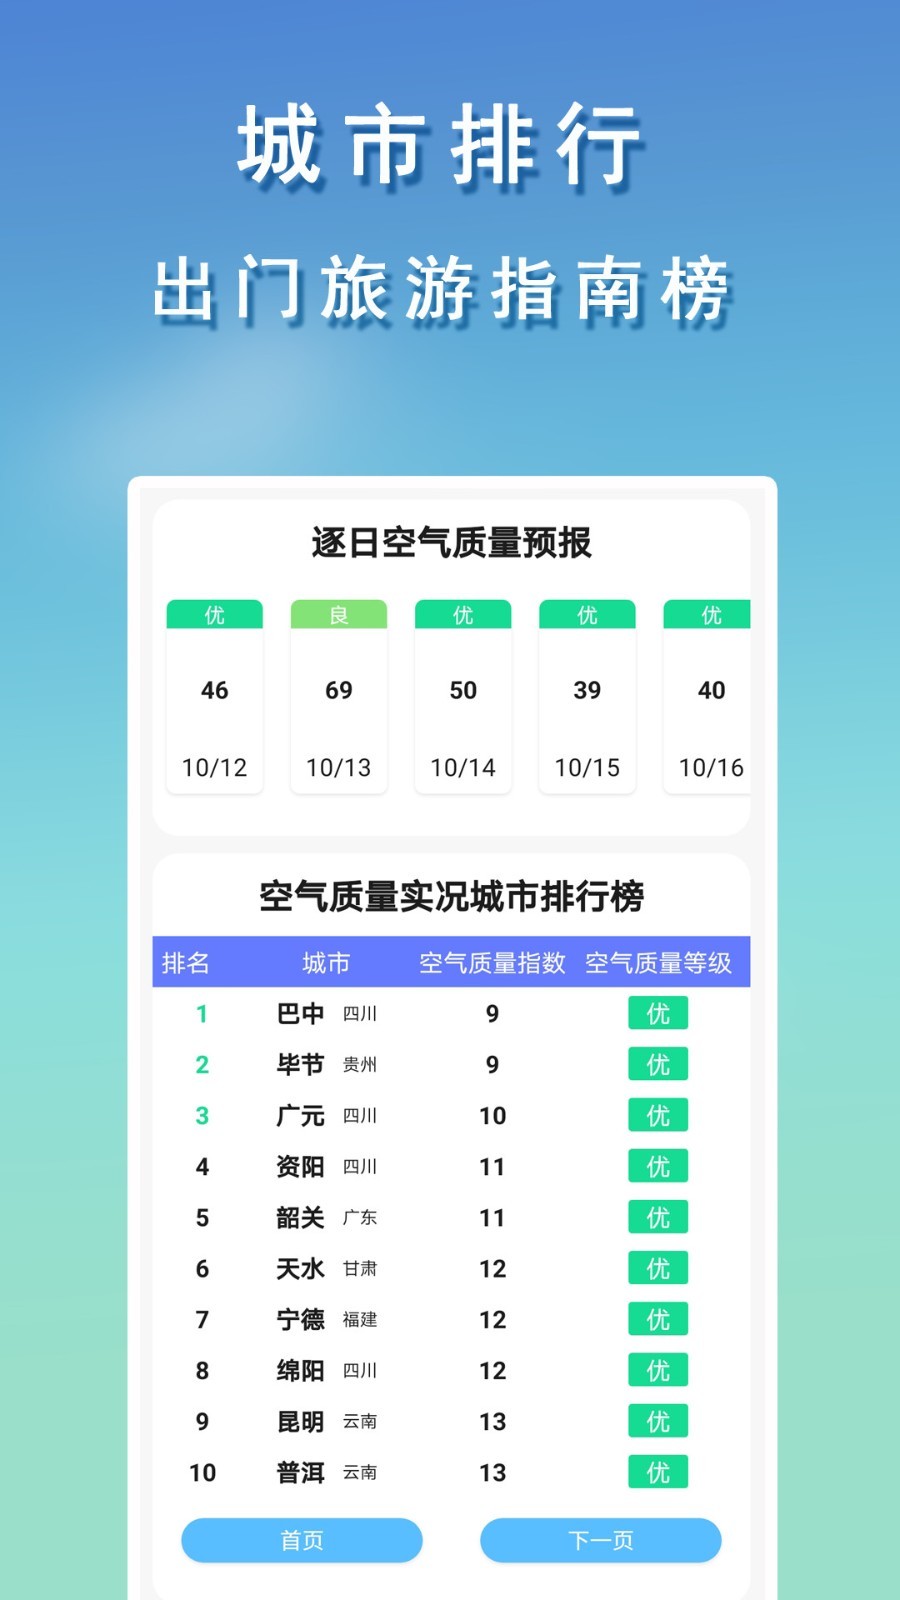 彩云天气app官方版